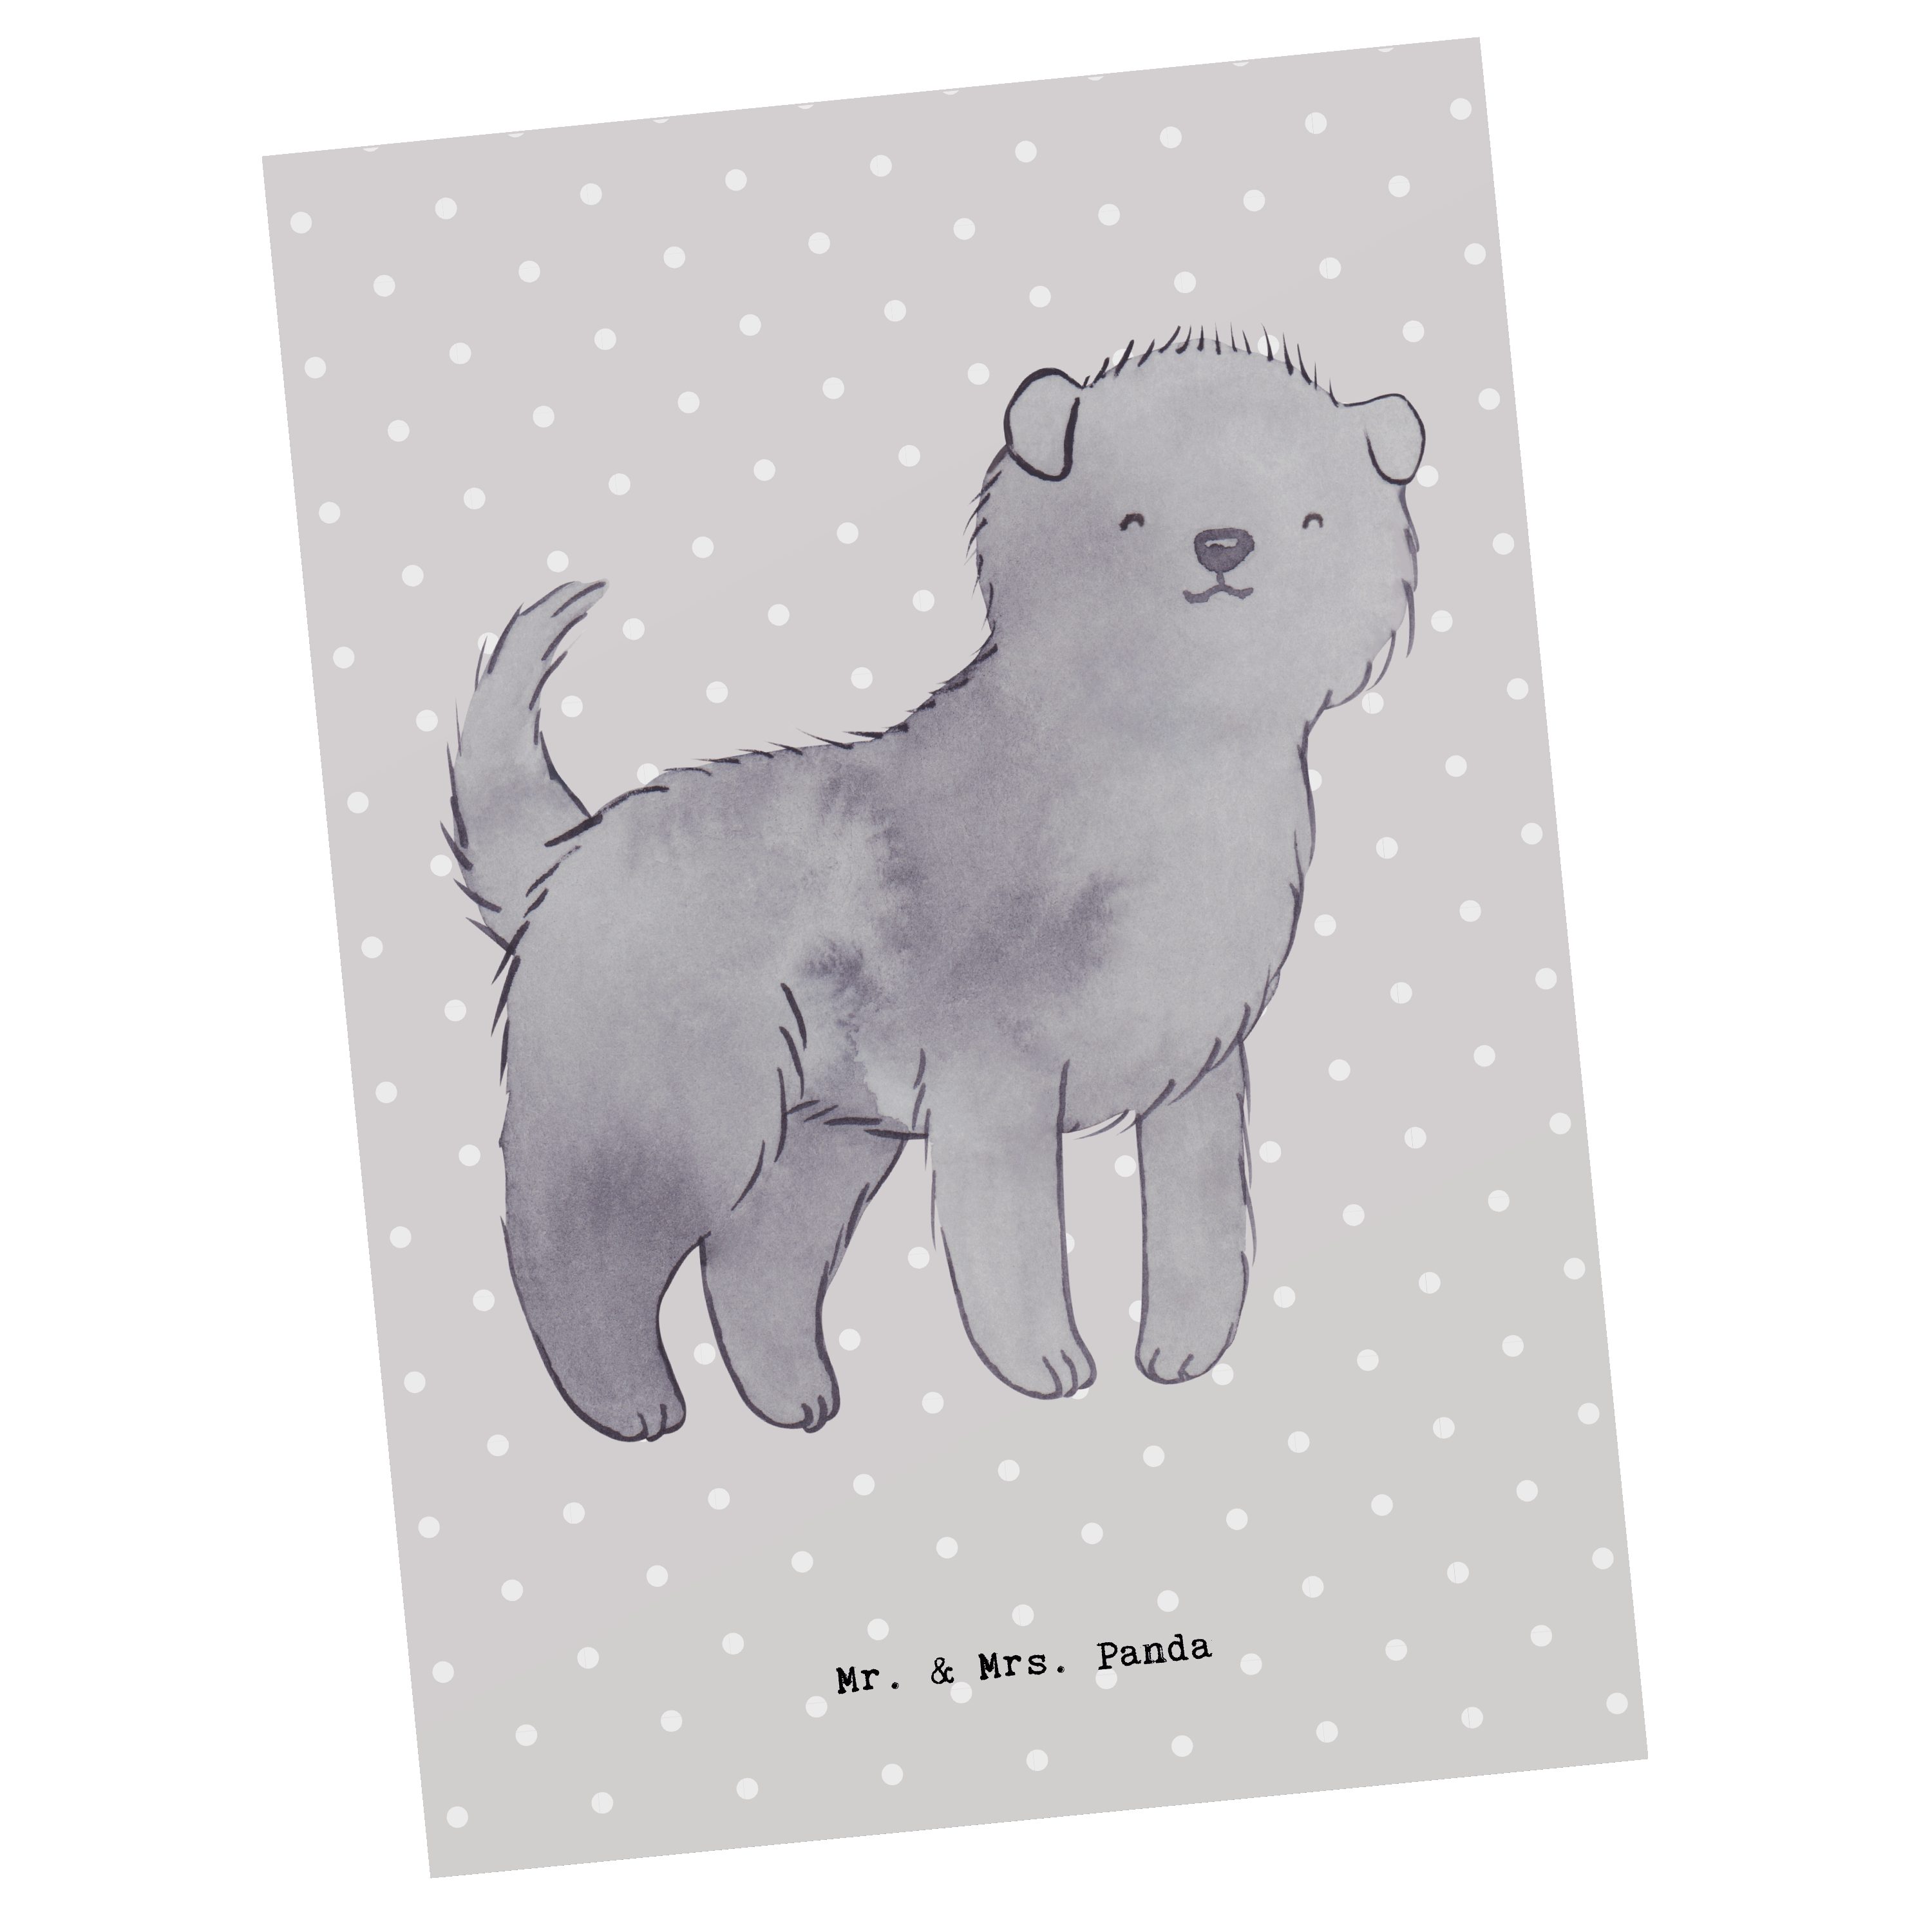 Mr. & Mrs. Panda Postkarte Affenpincher Moment - Grau Pastell - Geschenk, Dankeskarte, Hunderass